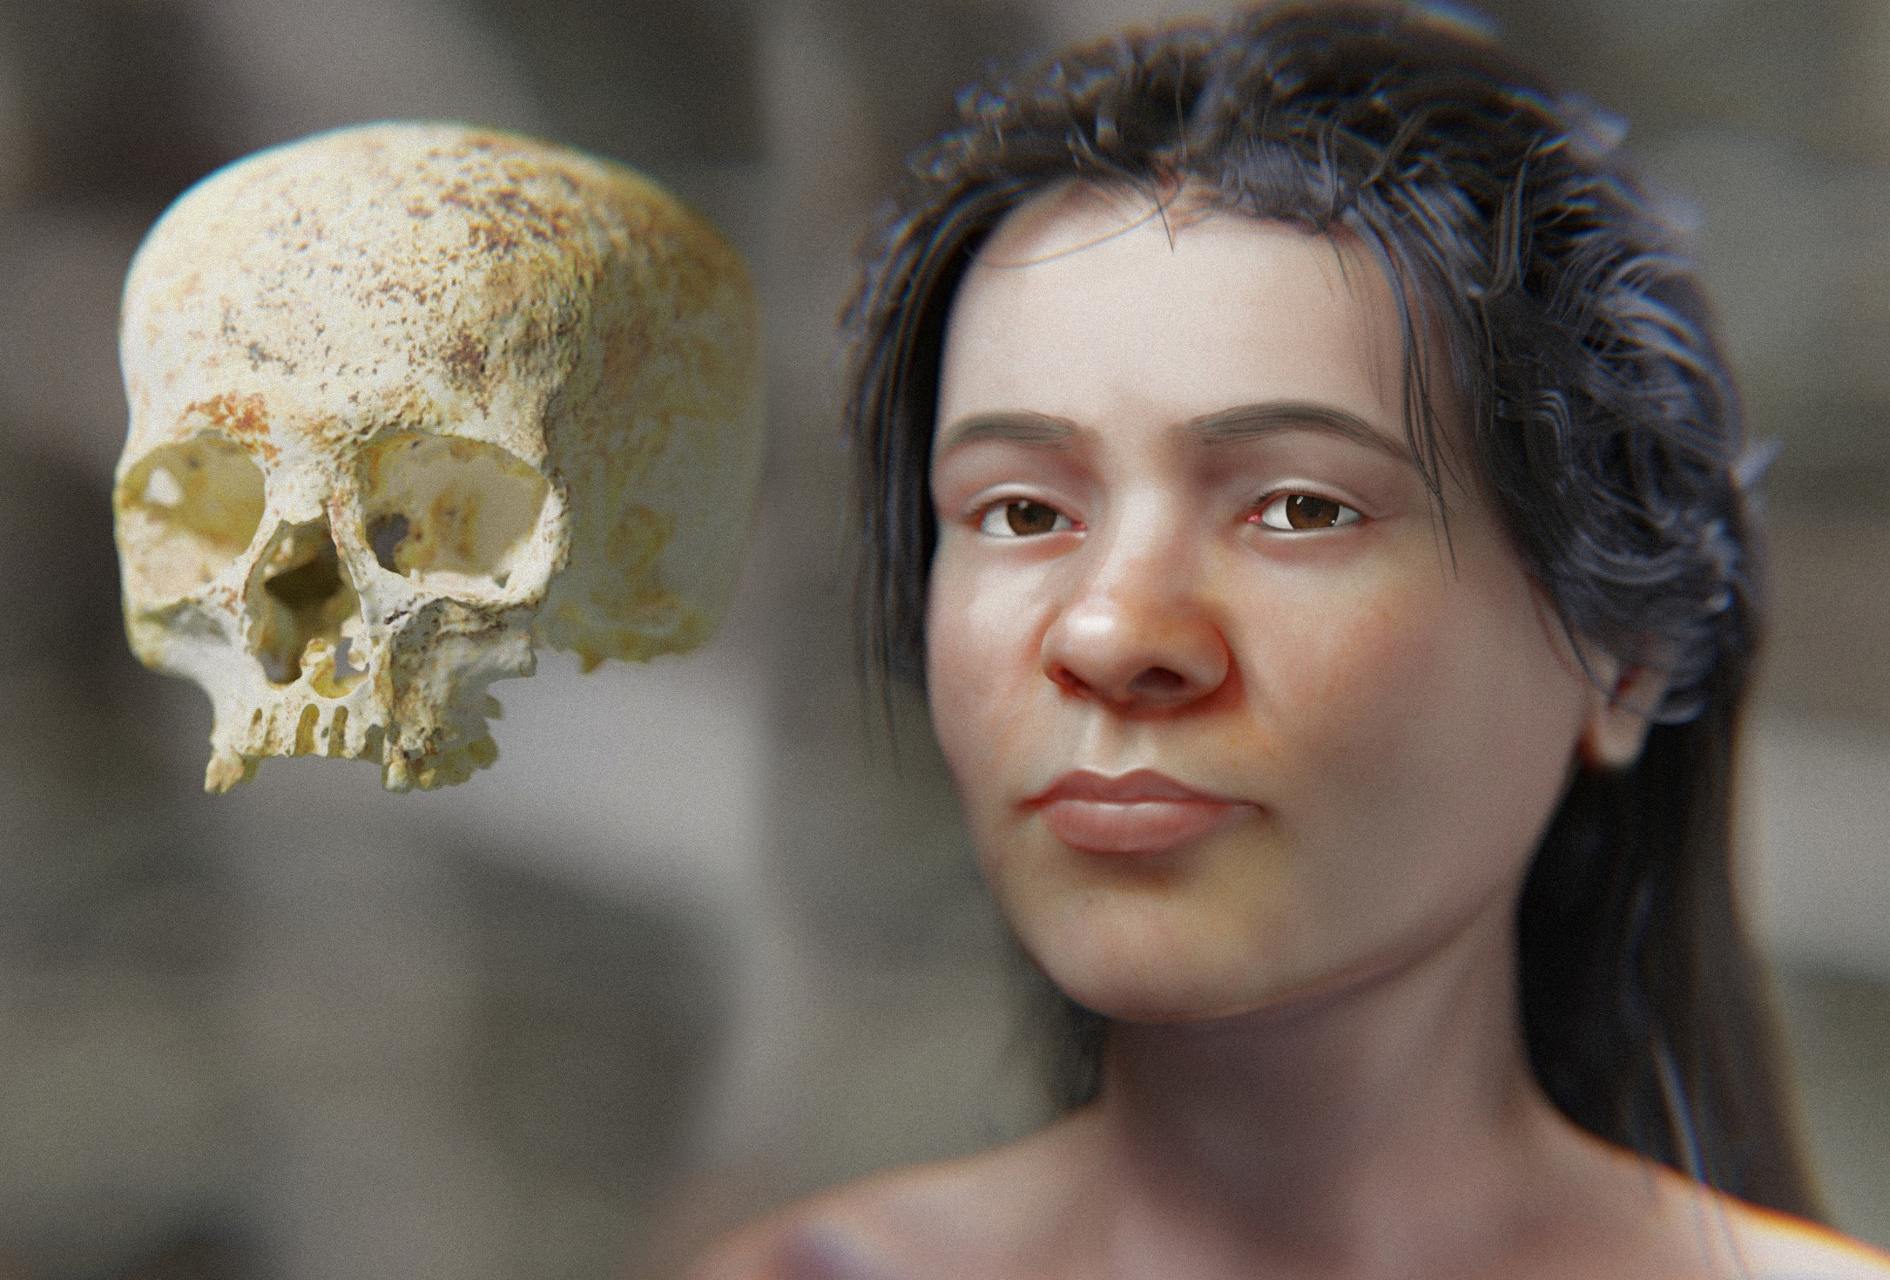 تصویری از چهره یک زن متعلق به عصر برنز توسط دانشمندان با استفاده از اسکن جمجمه او ایجاد شد. اعتقاد بر این است که این تصویر شبیه به چیزی است که او در 3,800 سال پیش به نظر می رسید. تقریب چهره یک زن عصر برنز.